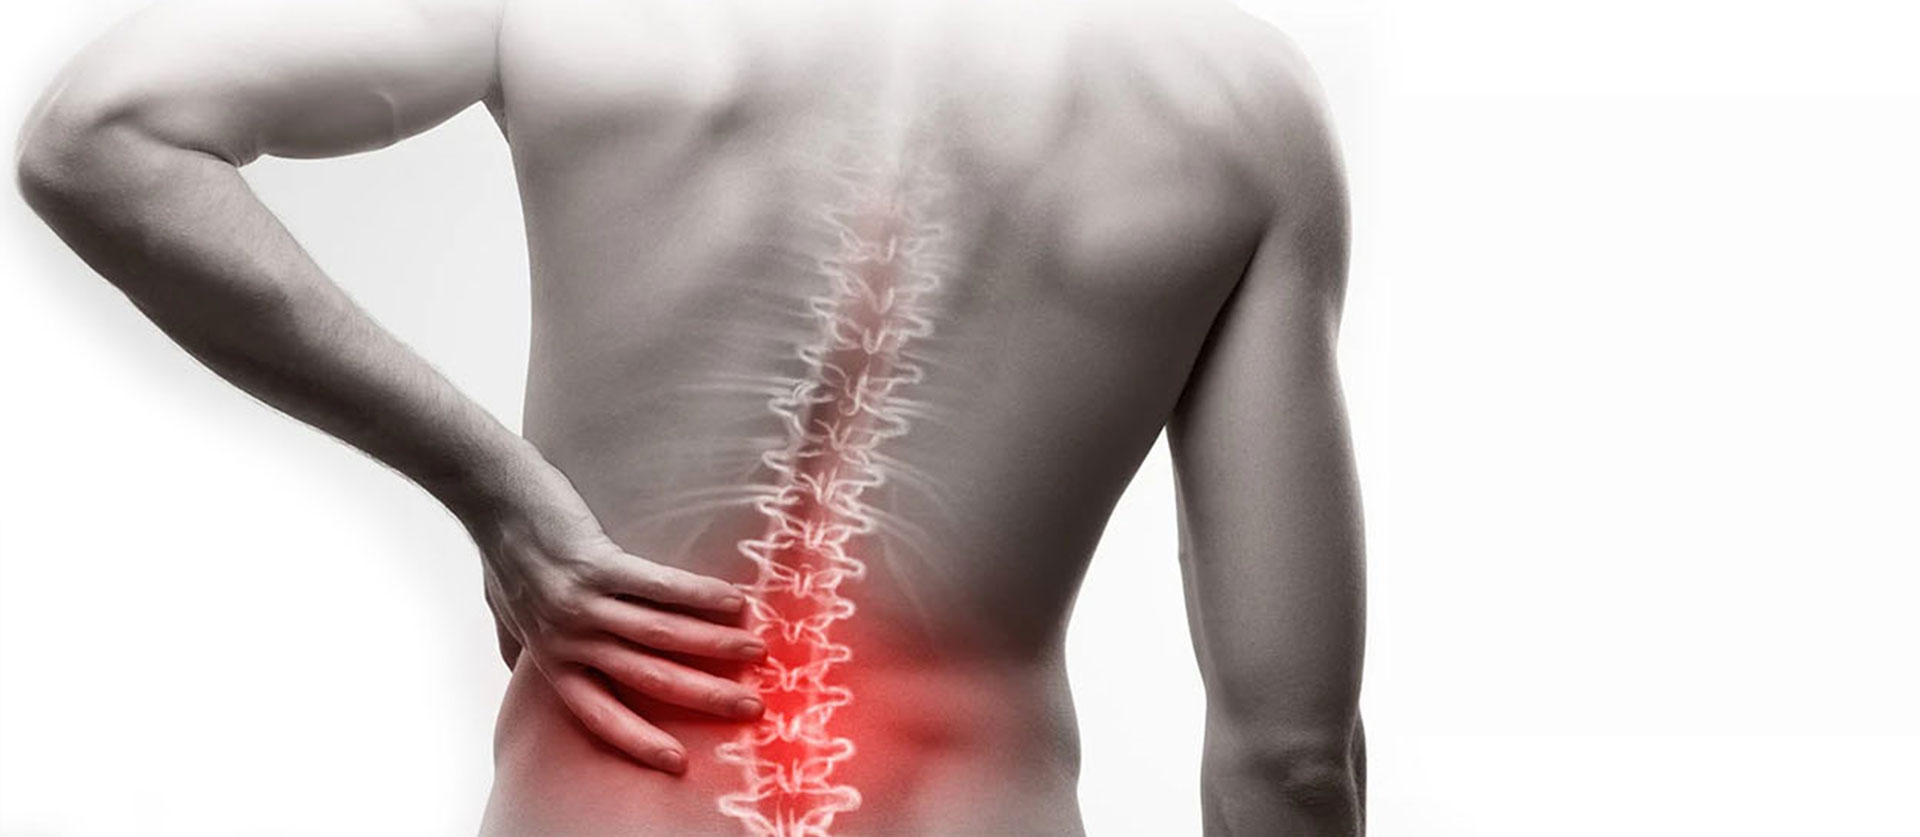 durere dureroasă la nivelul coloanei vertebrale sacrale)